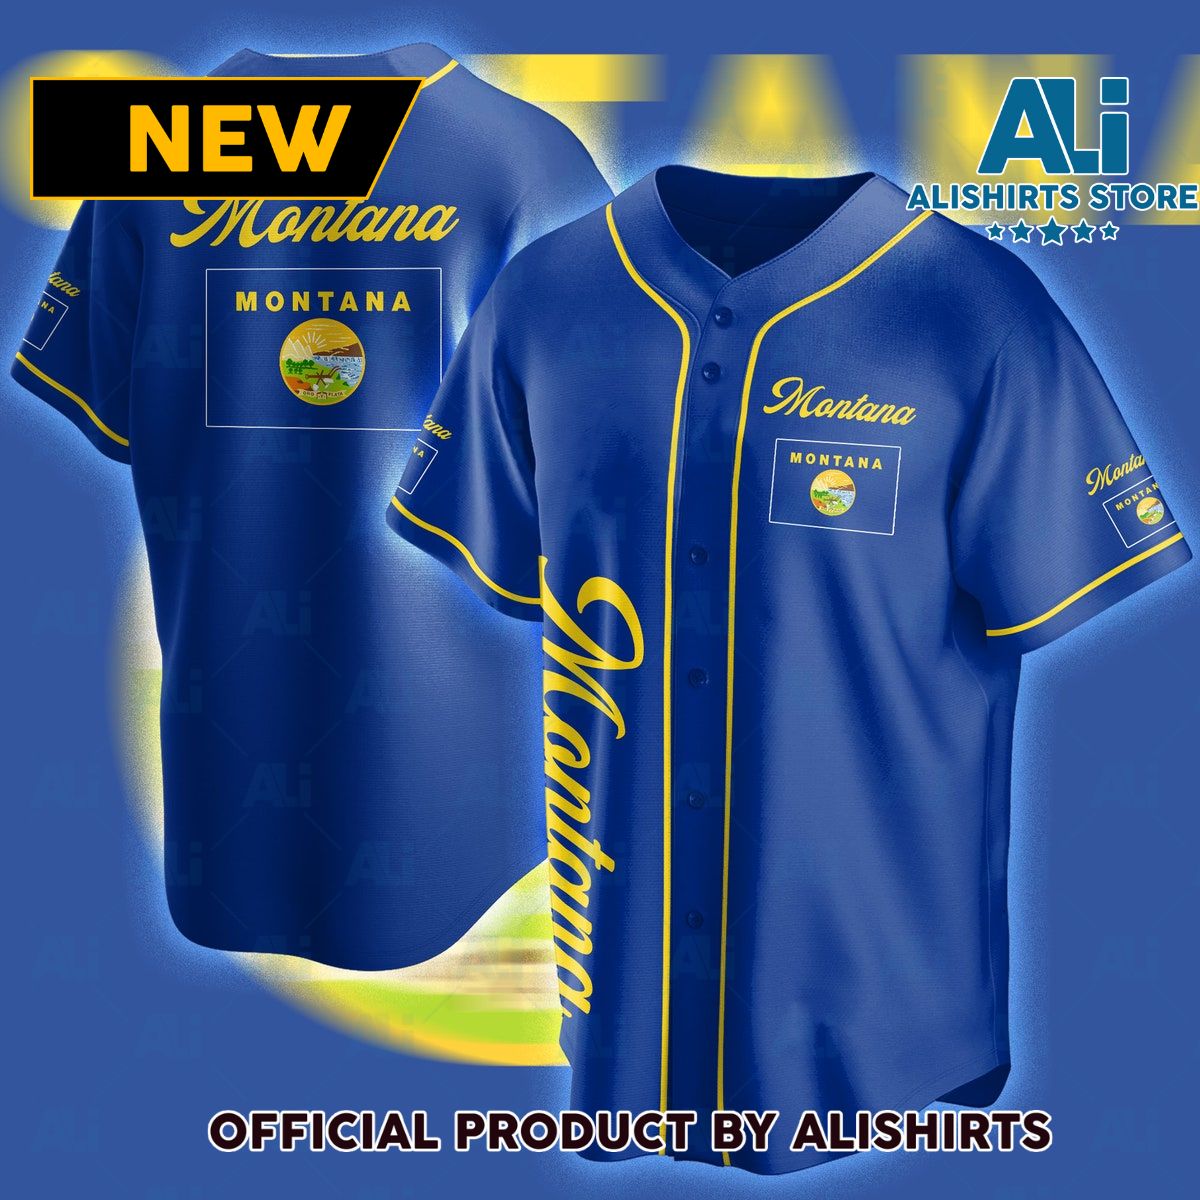 Montana Baseball Jersey Shirts